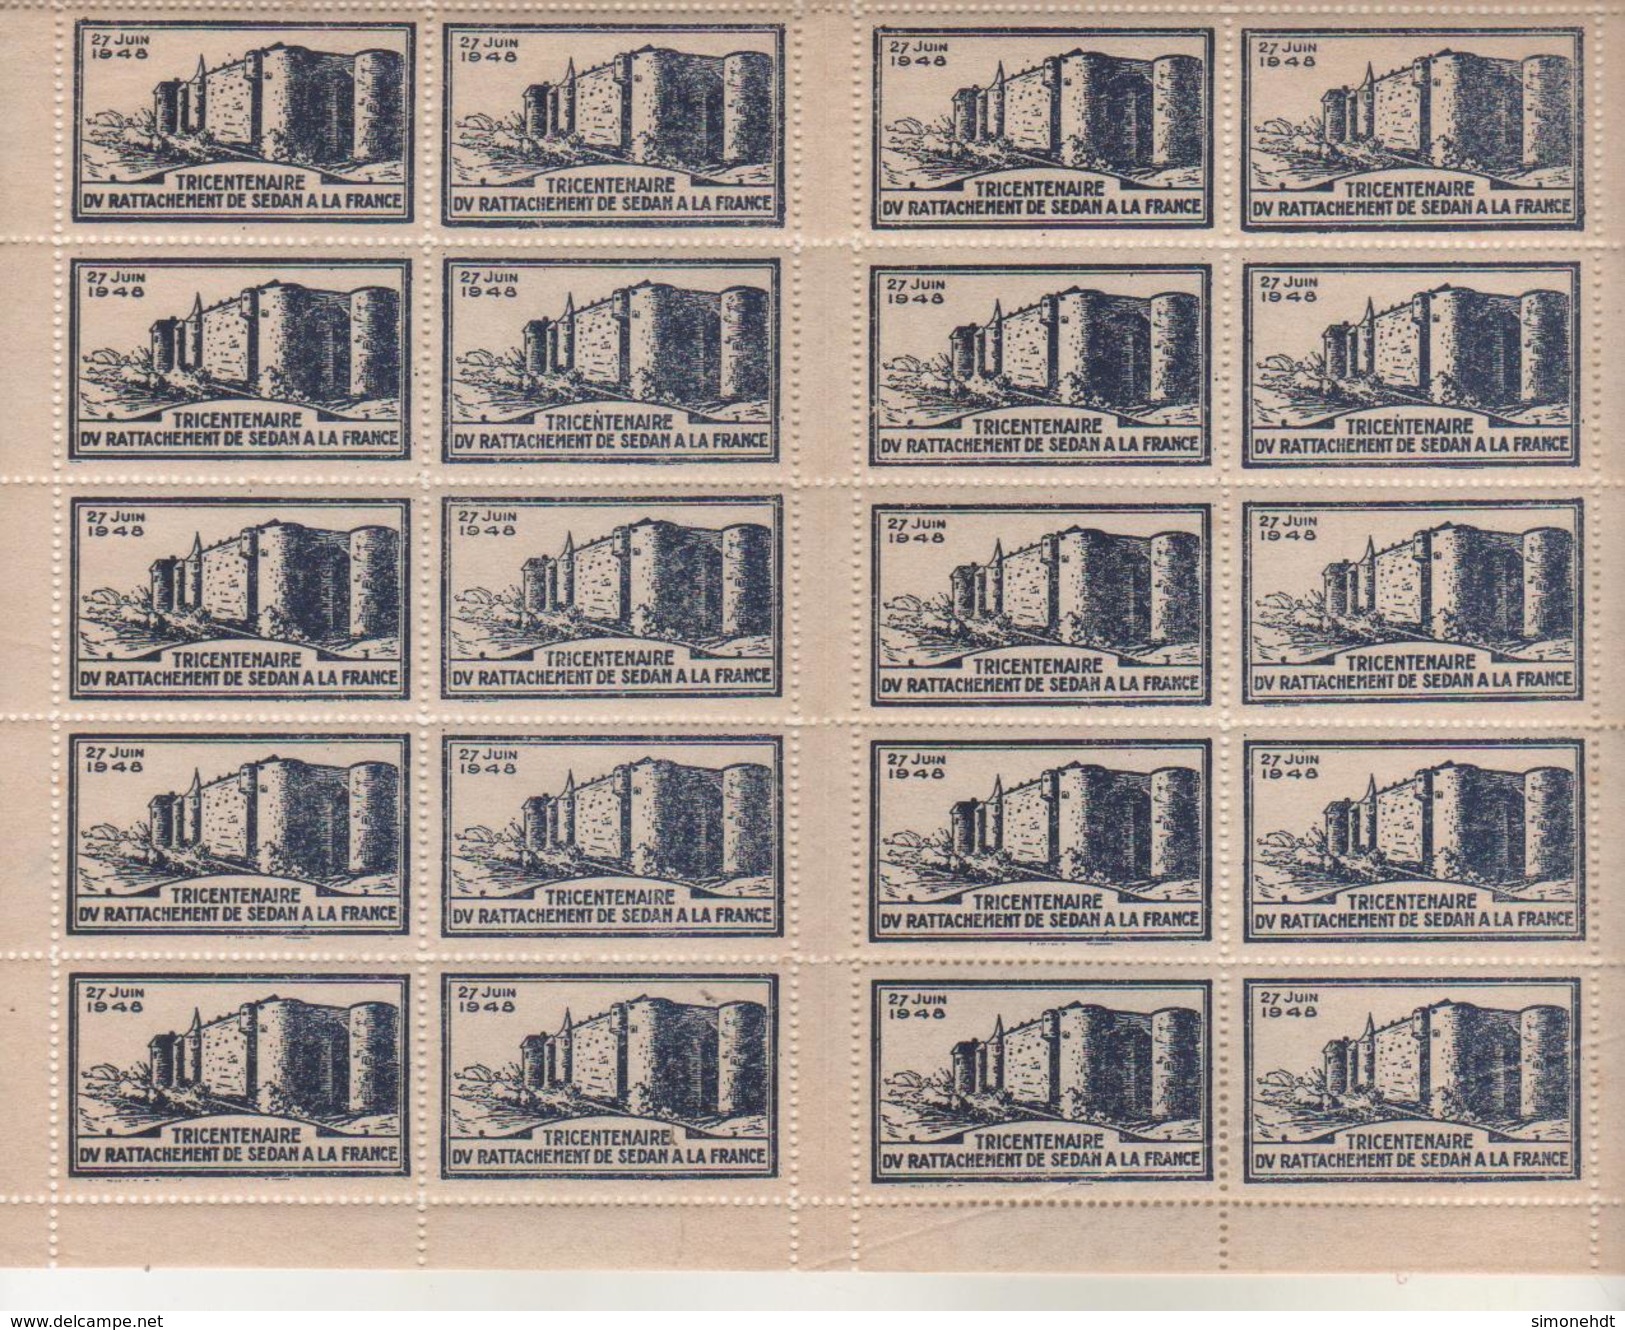 Planche De 20 Vignettes, Timbres - Tricentenaire Du Rattachement De SEDAN à La France - 27 Juin 1948 - Erinnophilie